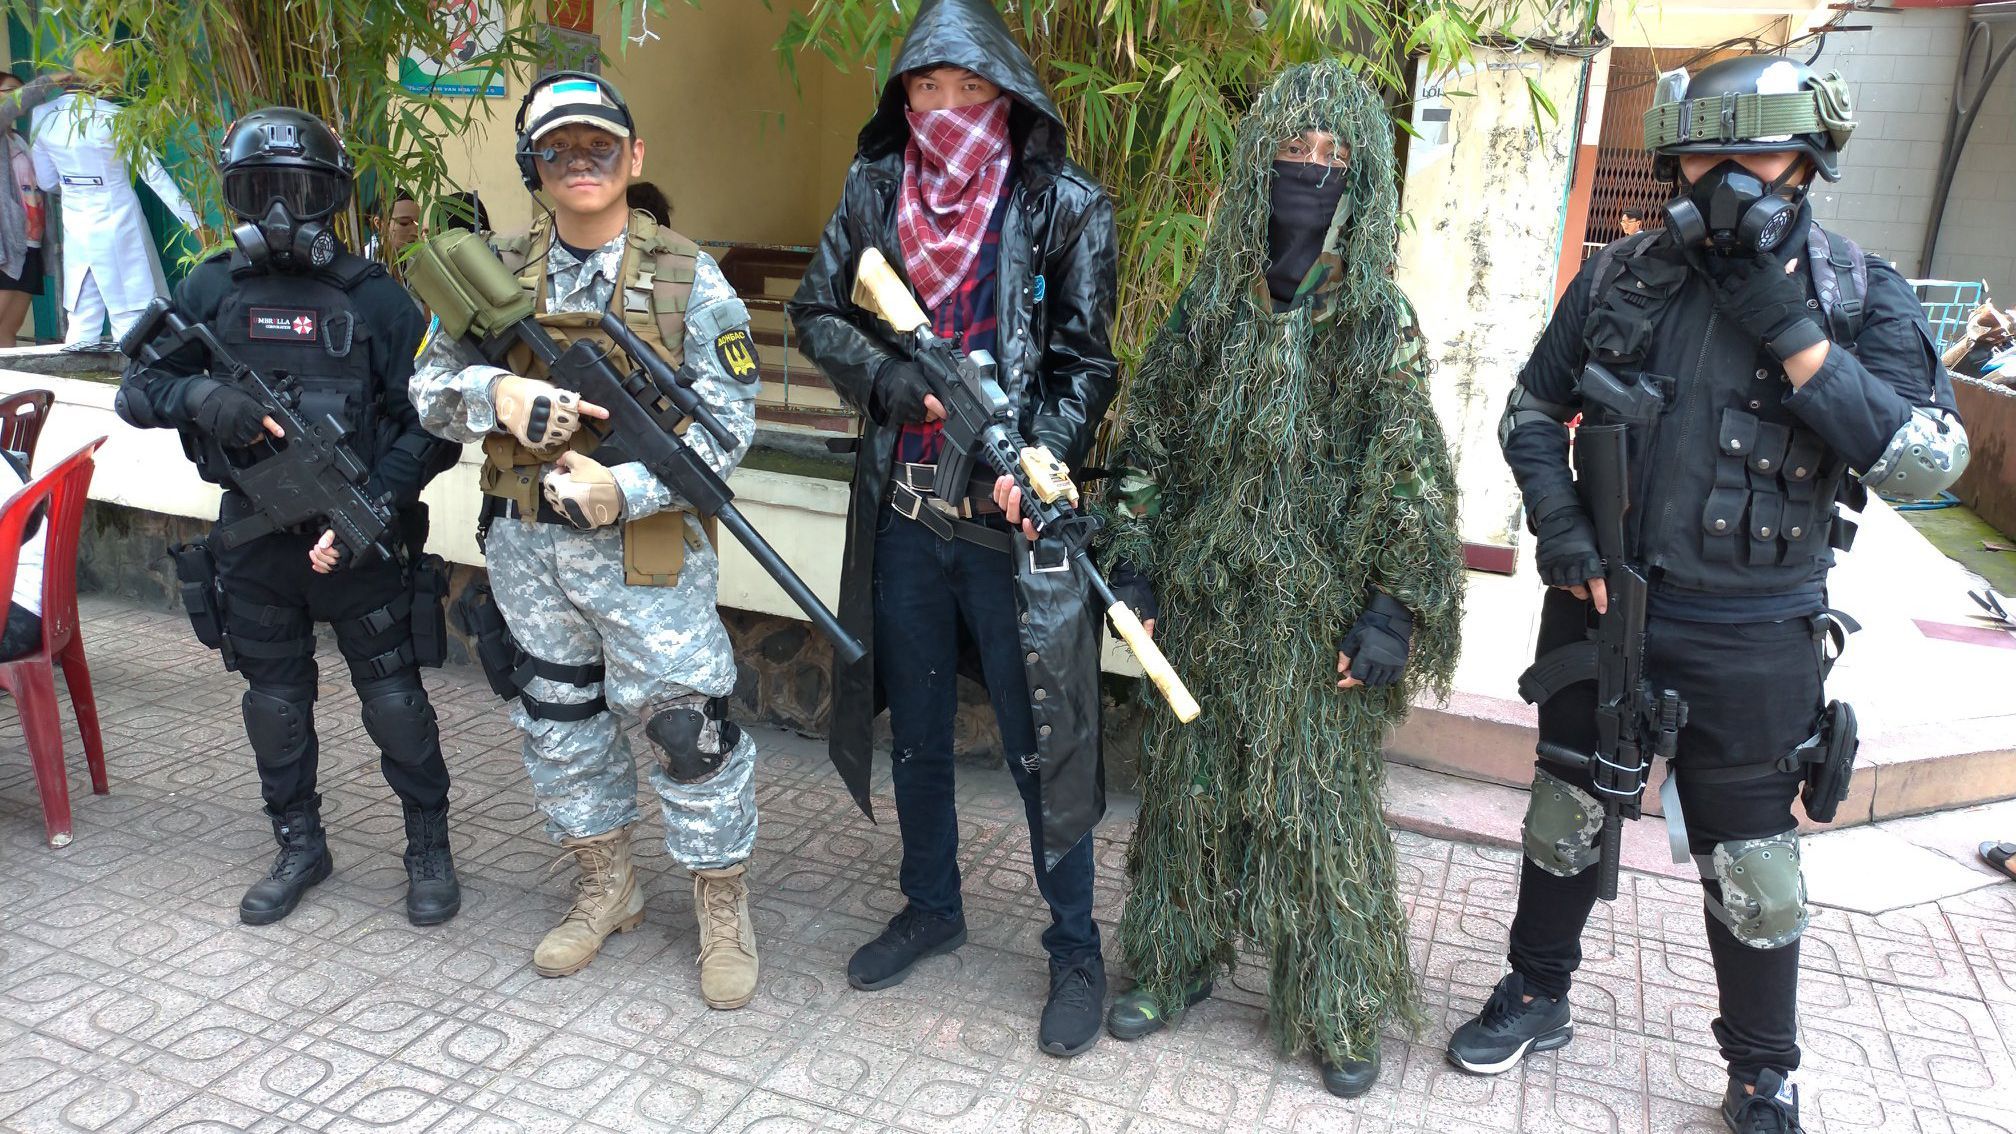 Вьетнамец фанатеет от украинской армии: почему "Слава Украине" стало для него родным лозунгом